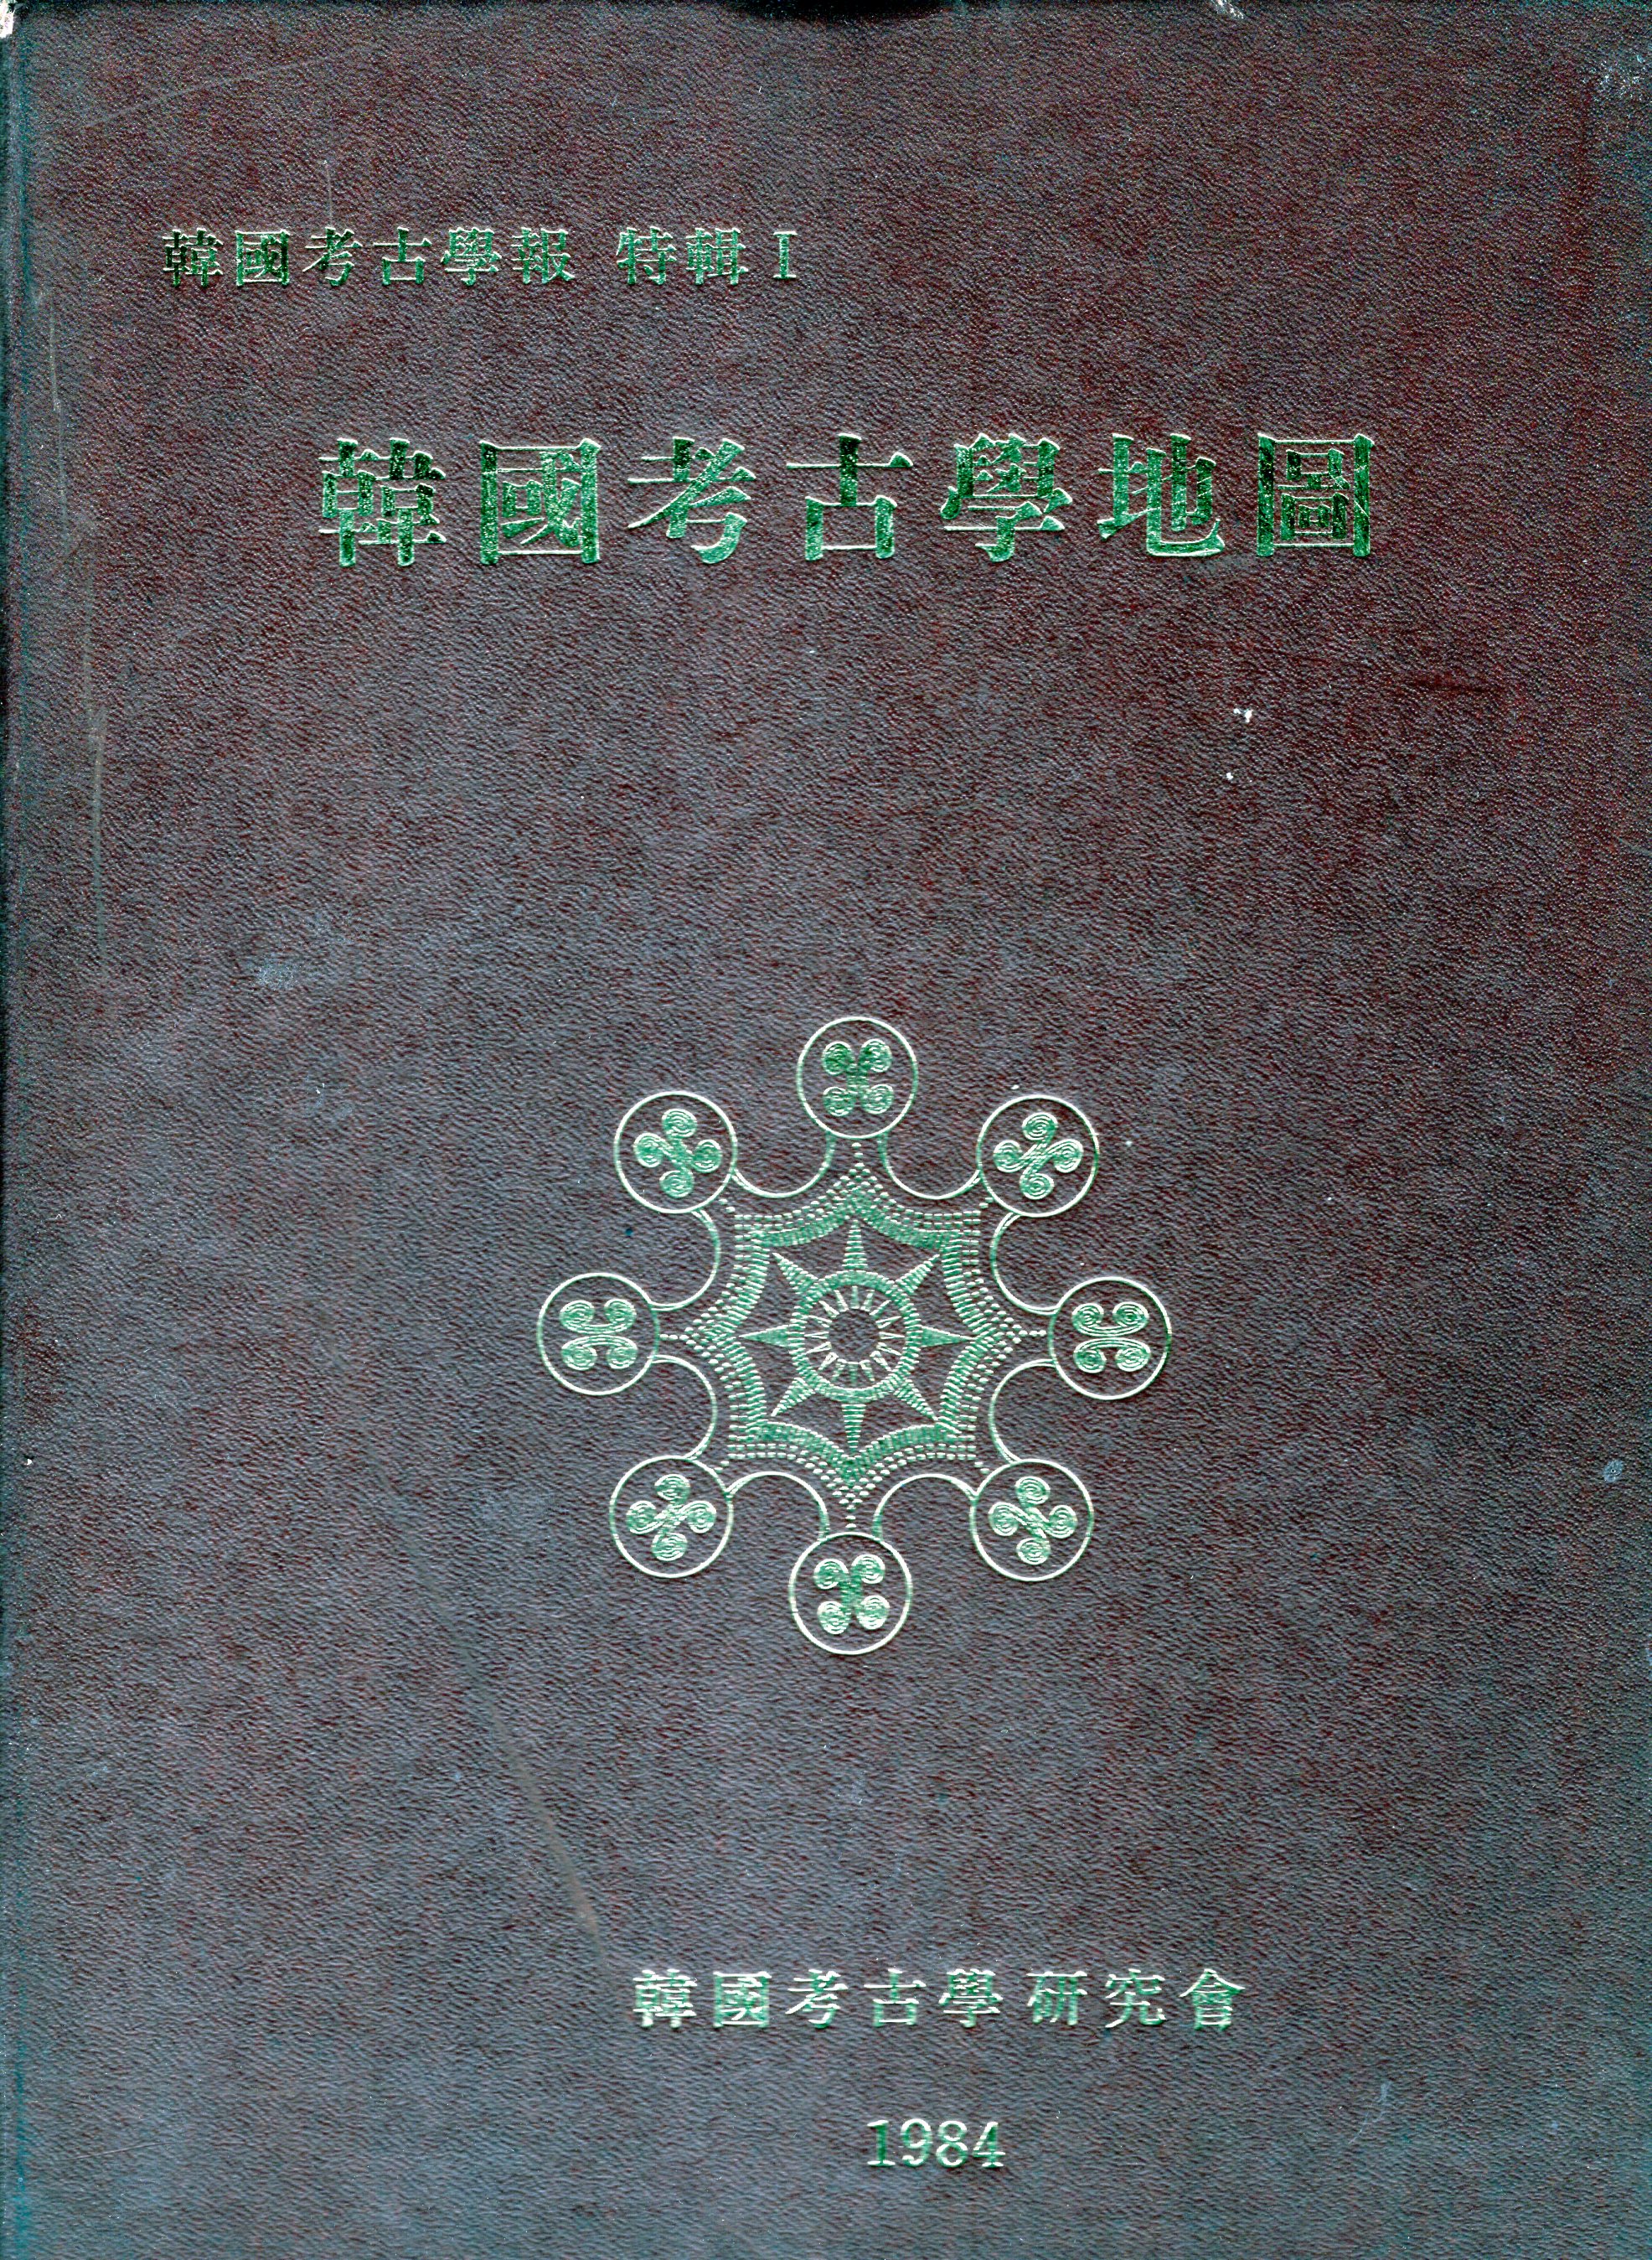 한국 고고학보 특집 1